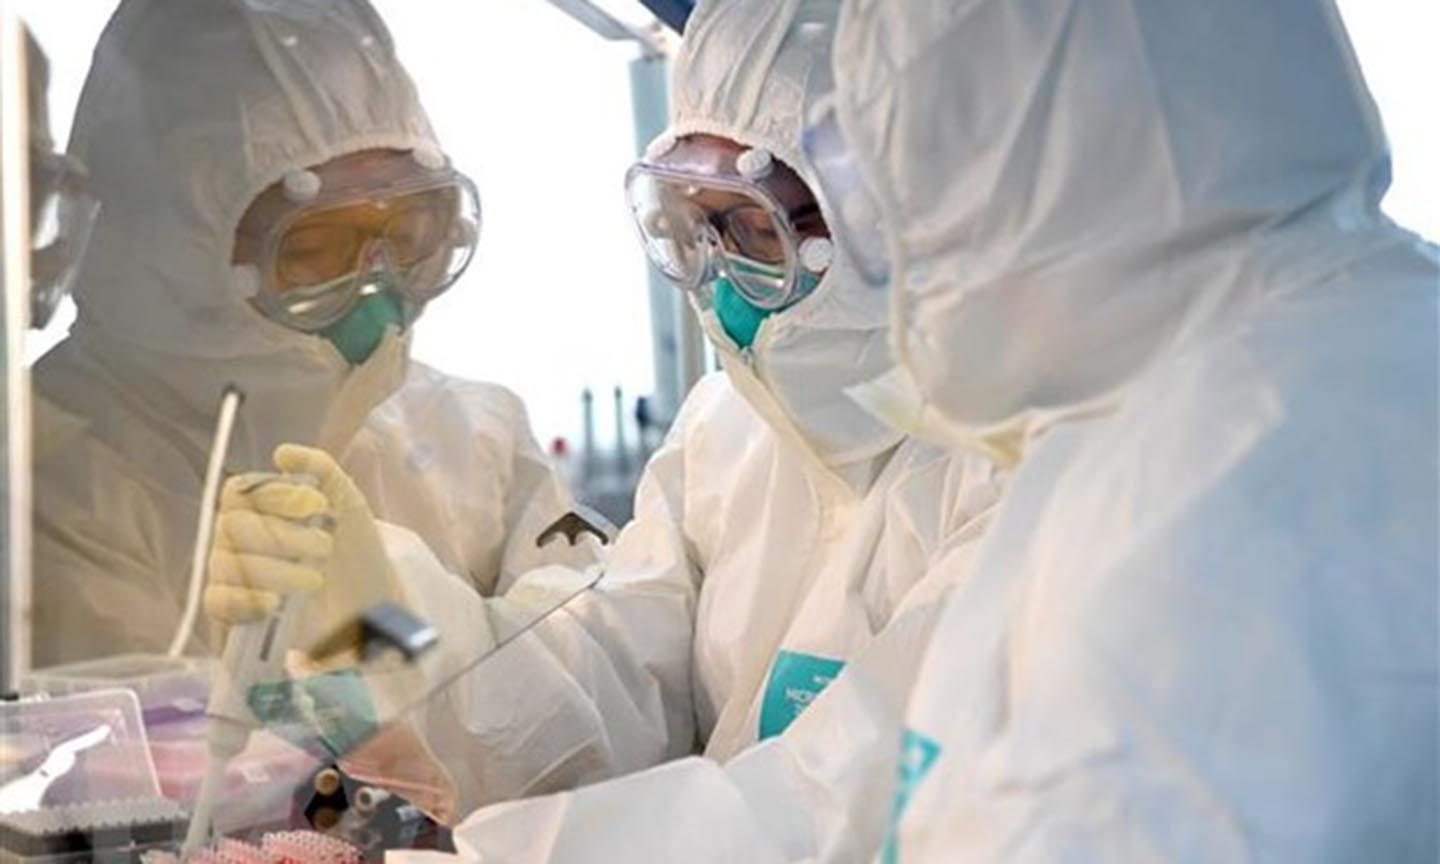 Các nhà nghiên cứu làm việc tại phòng thí nghiệm của trung tâm kiểm soát và ngăn ngừa dịch bệnh tại Hà Nam, Trung Quốc. (Ảnh: THX/TTXVN)